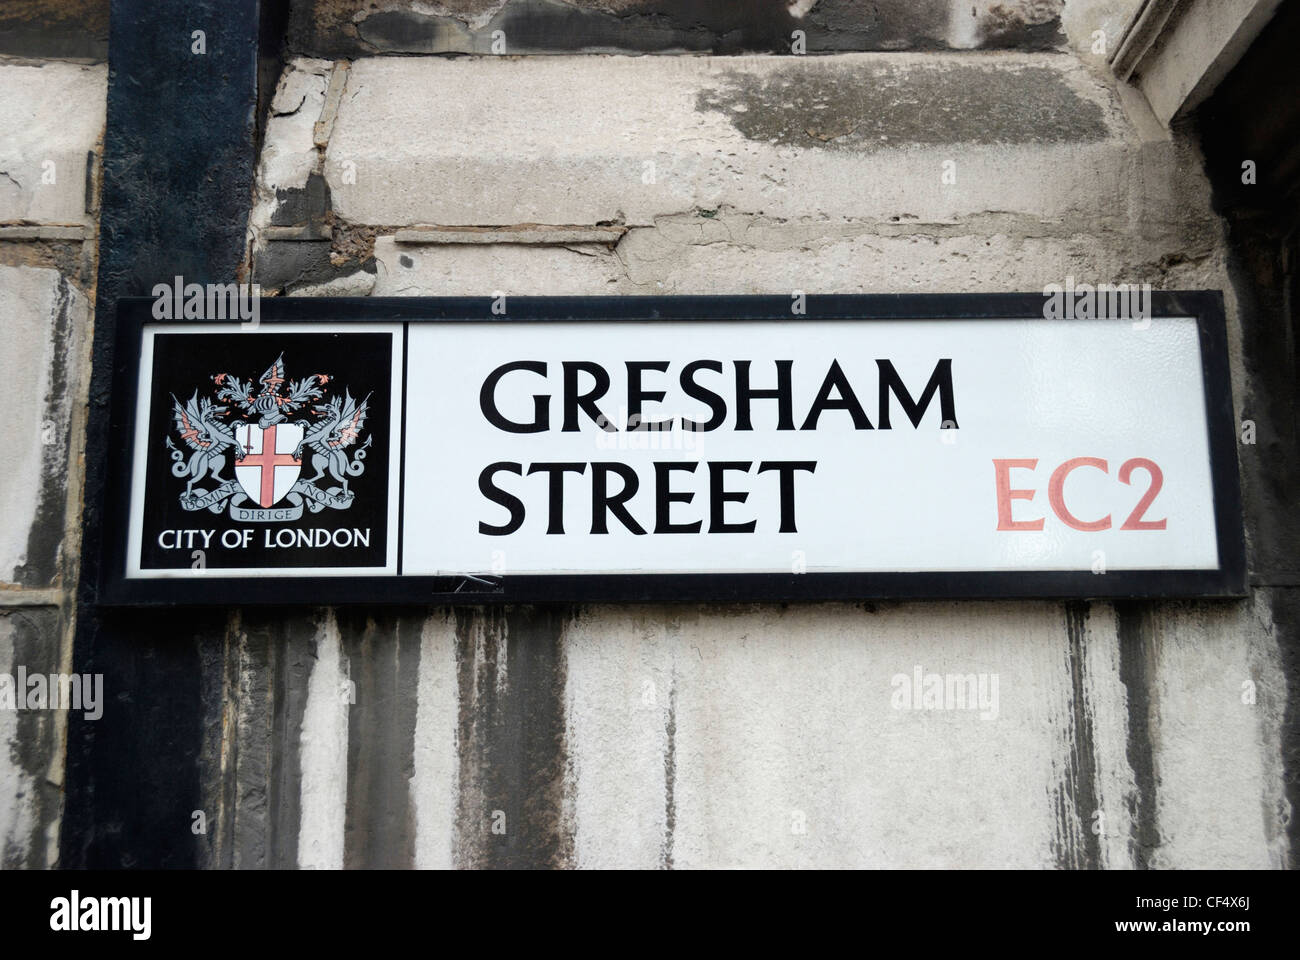 Gresham Street Ville de London EC2 street sign sur mur. Banque D'Images